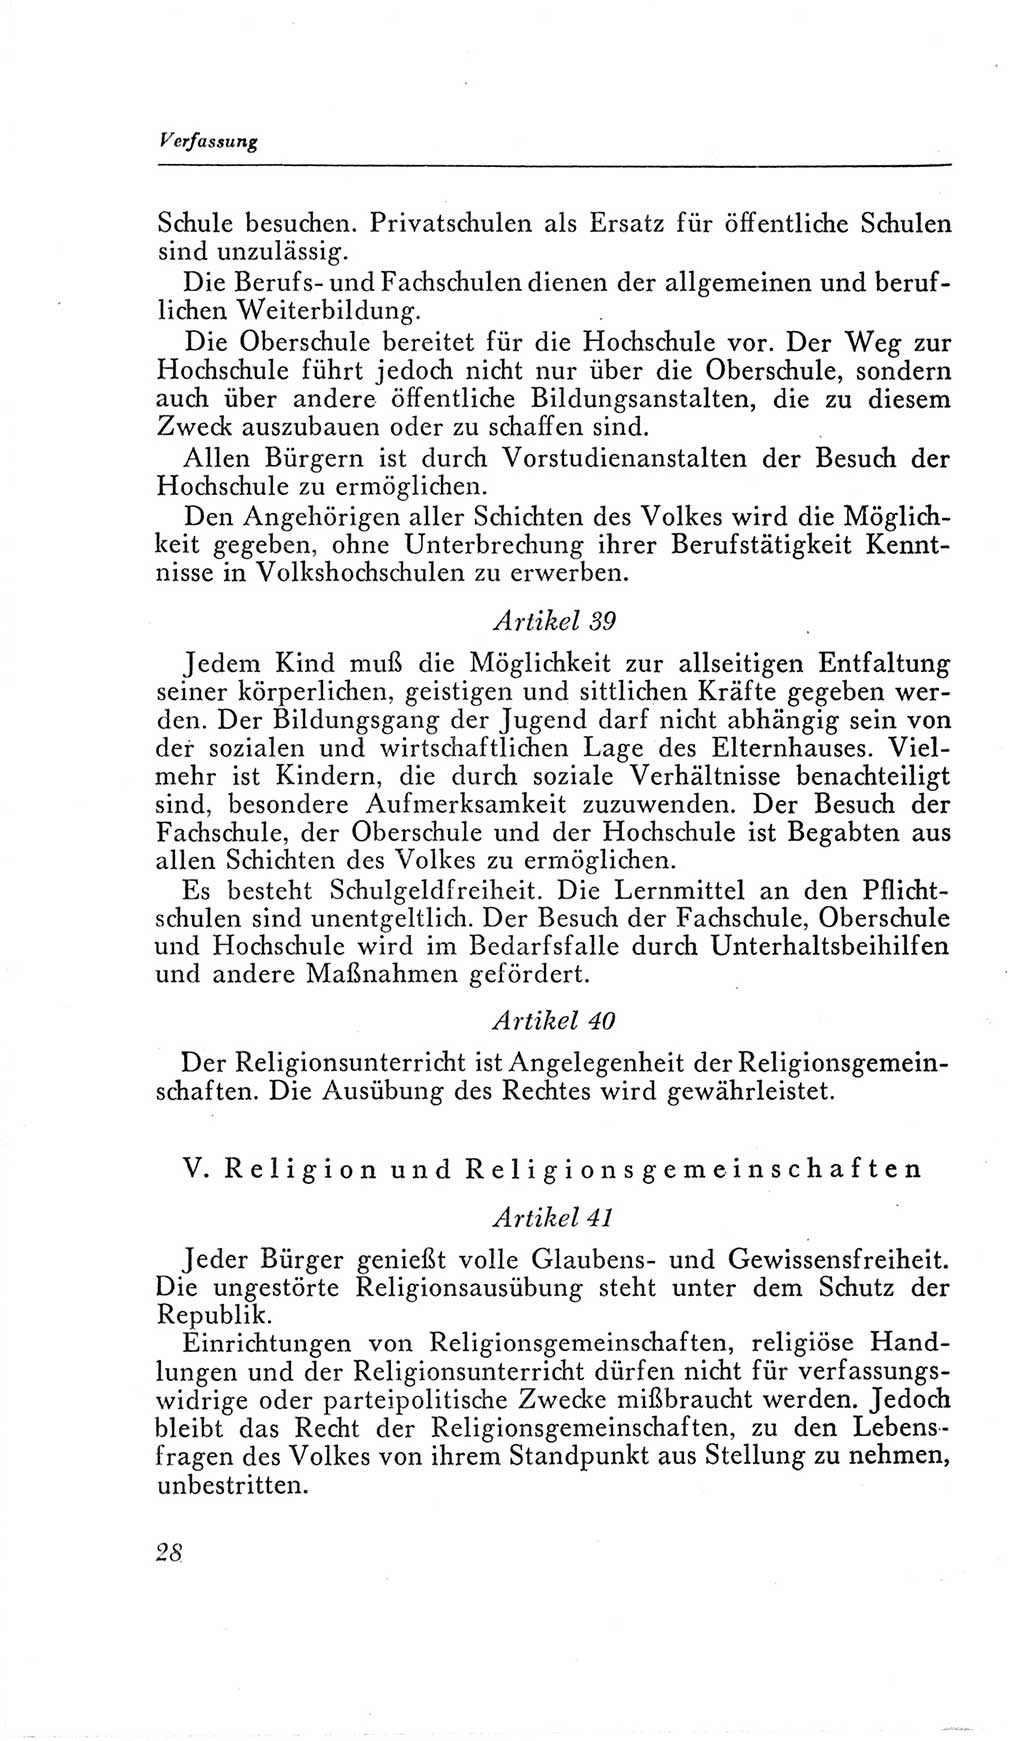 Handbuch der Volkskammer (VK) der Deutschen Demokratischen Republik (DDR), 2. Wahlperiode 1954-1958, Seite 28 (Hdb. VK. DDR, 2. WP. 1954-1958, S. 28)